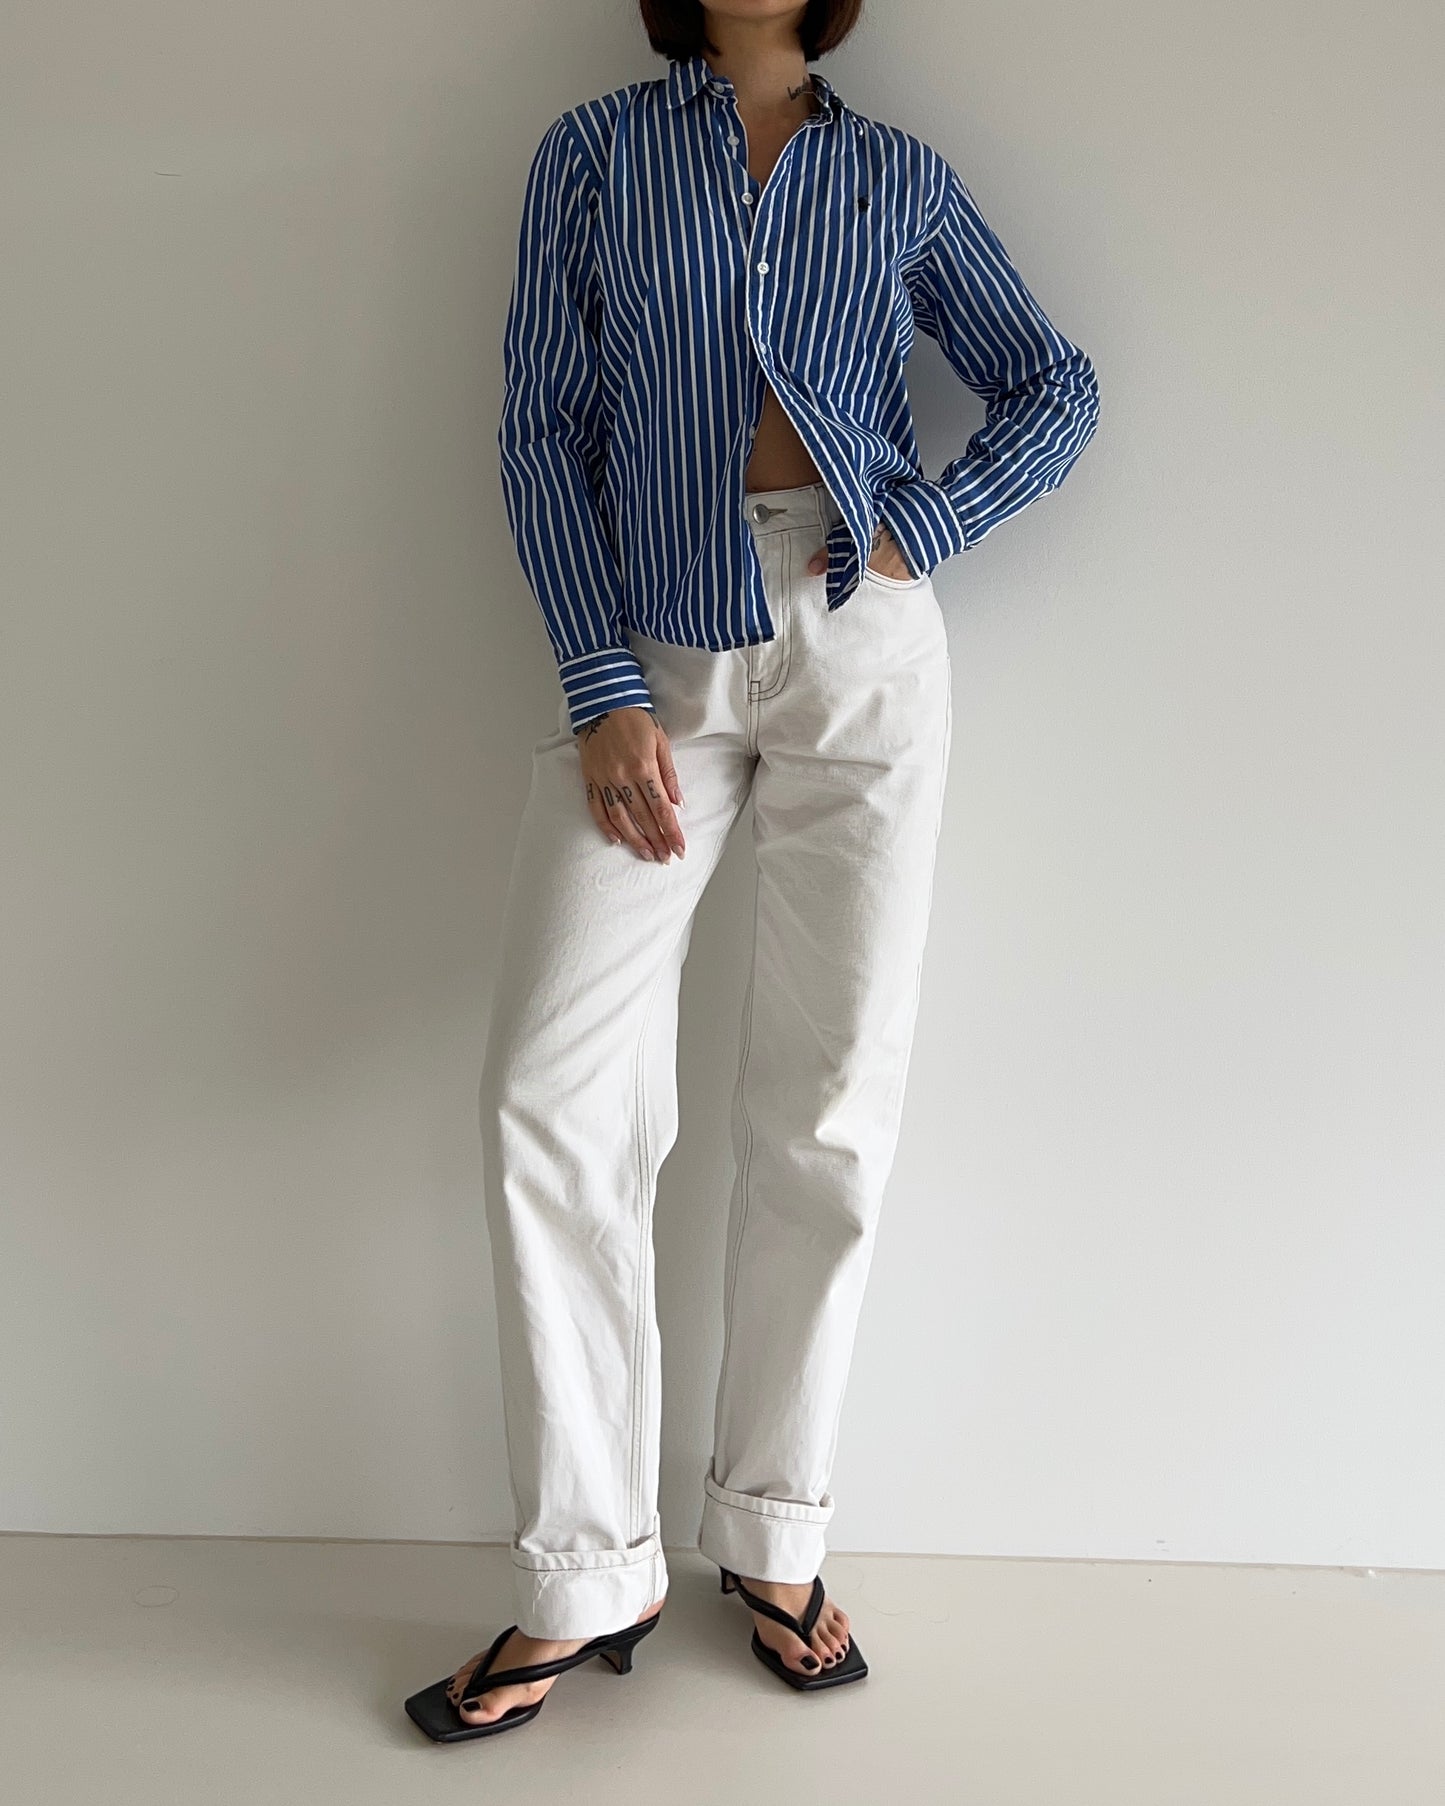 Striped Shirt Ralph Lauren